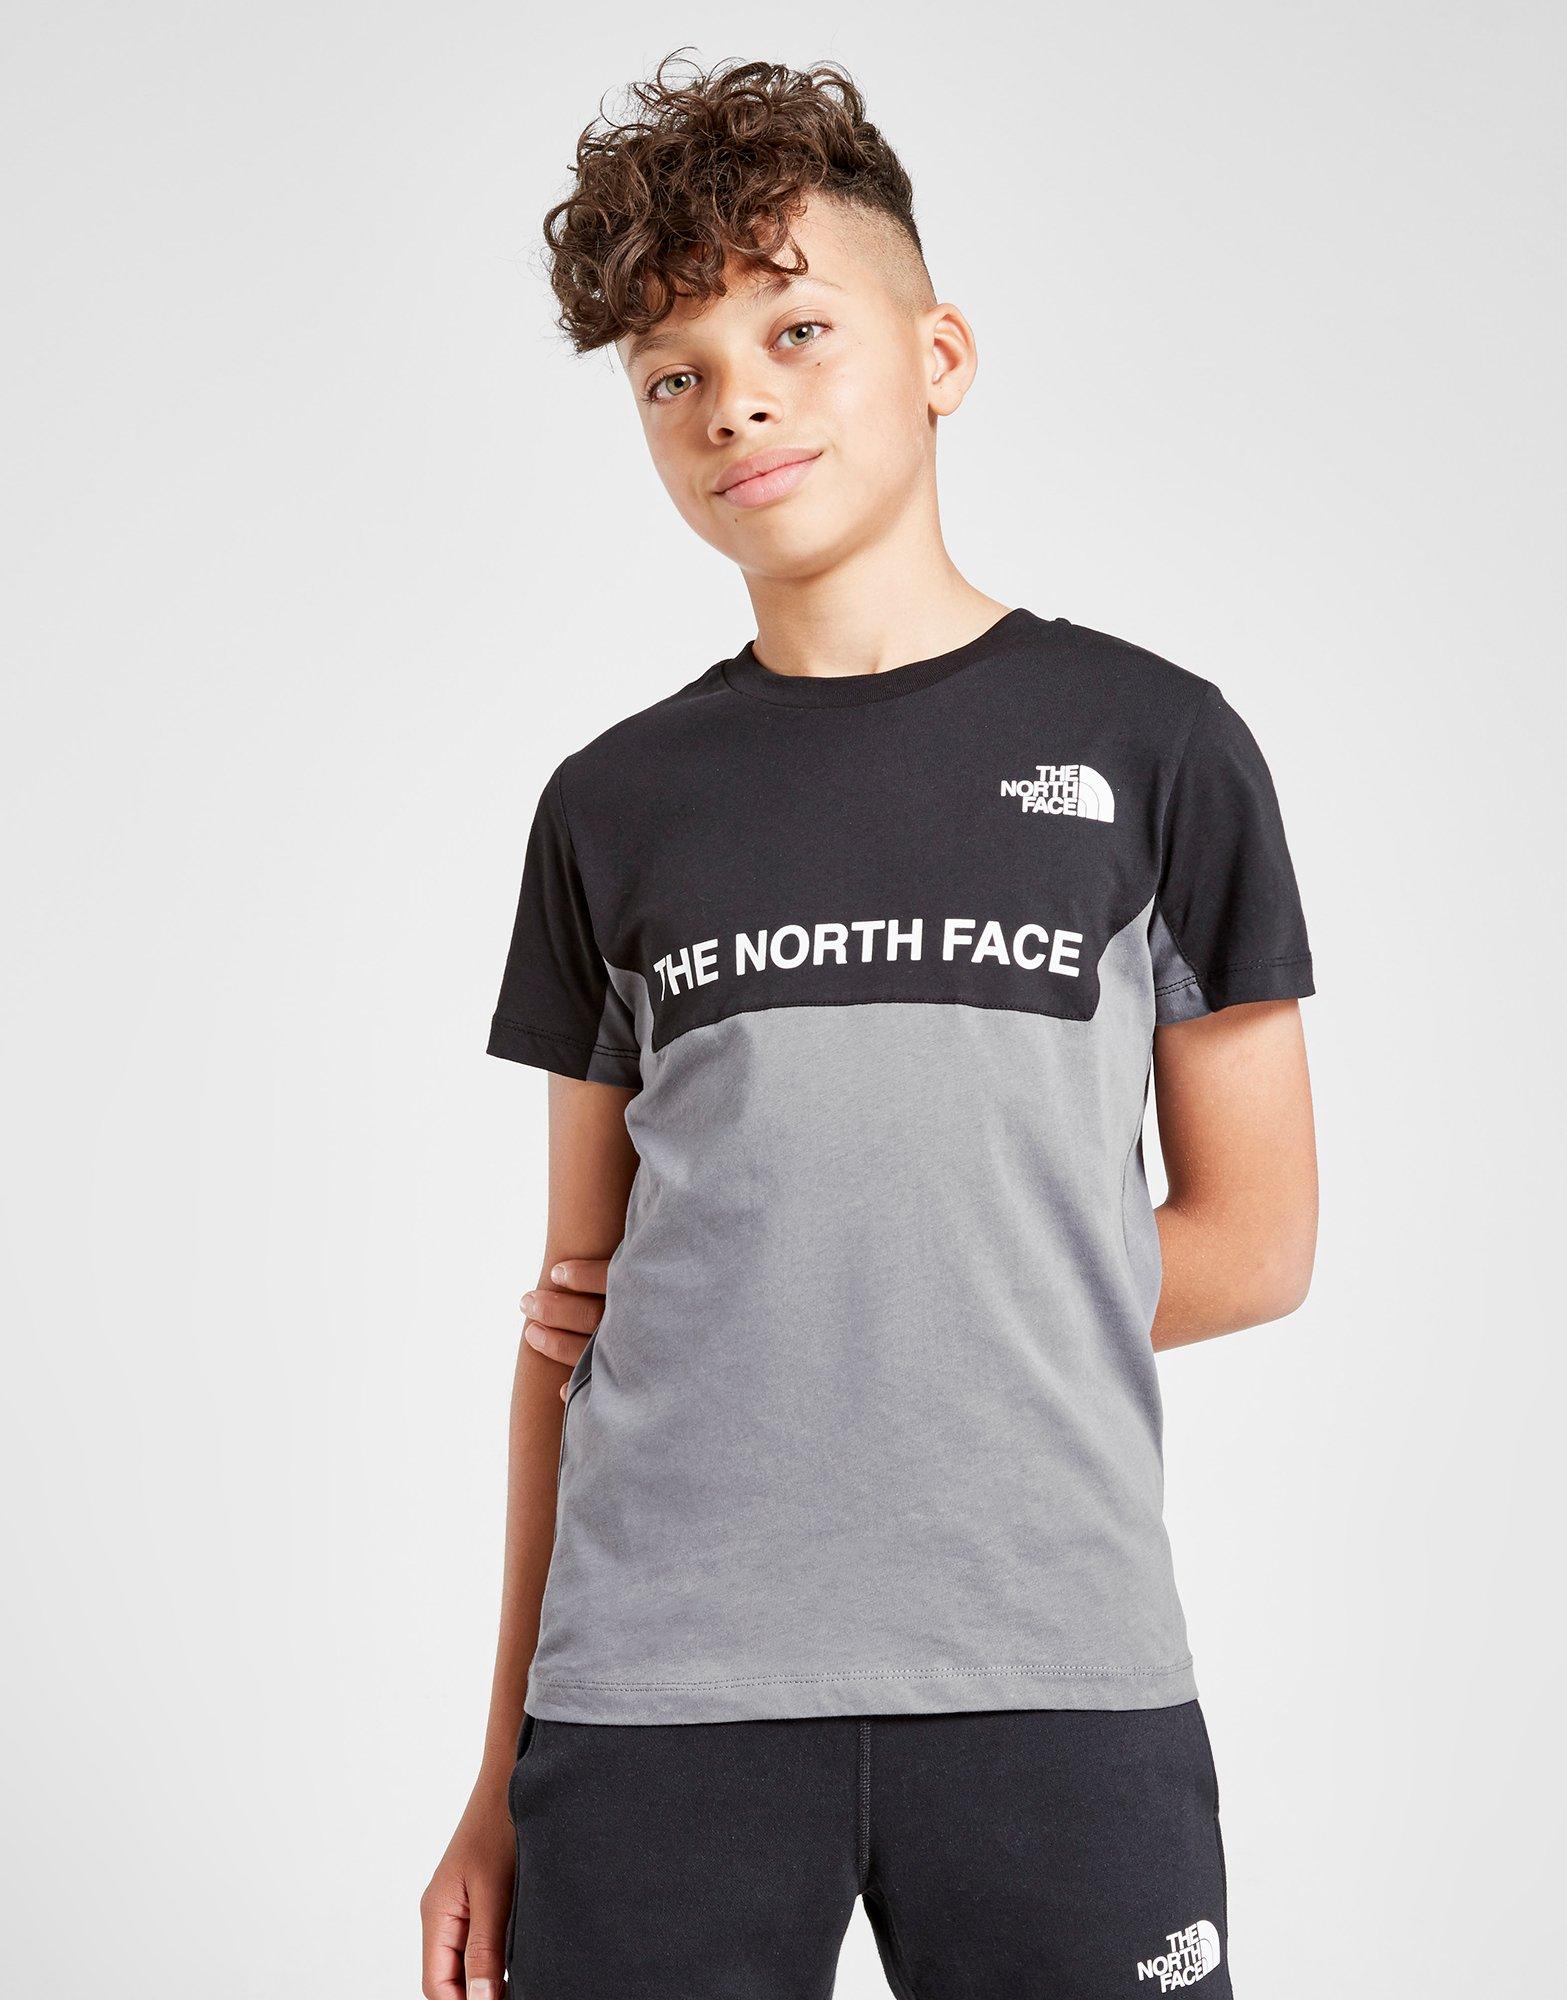 north face t shirt